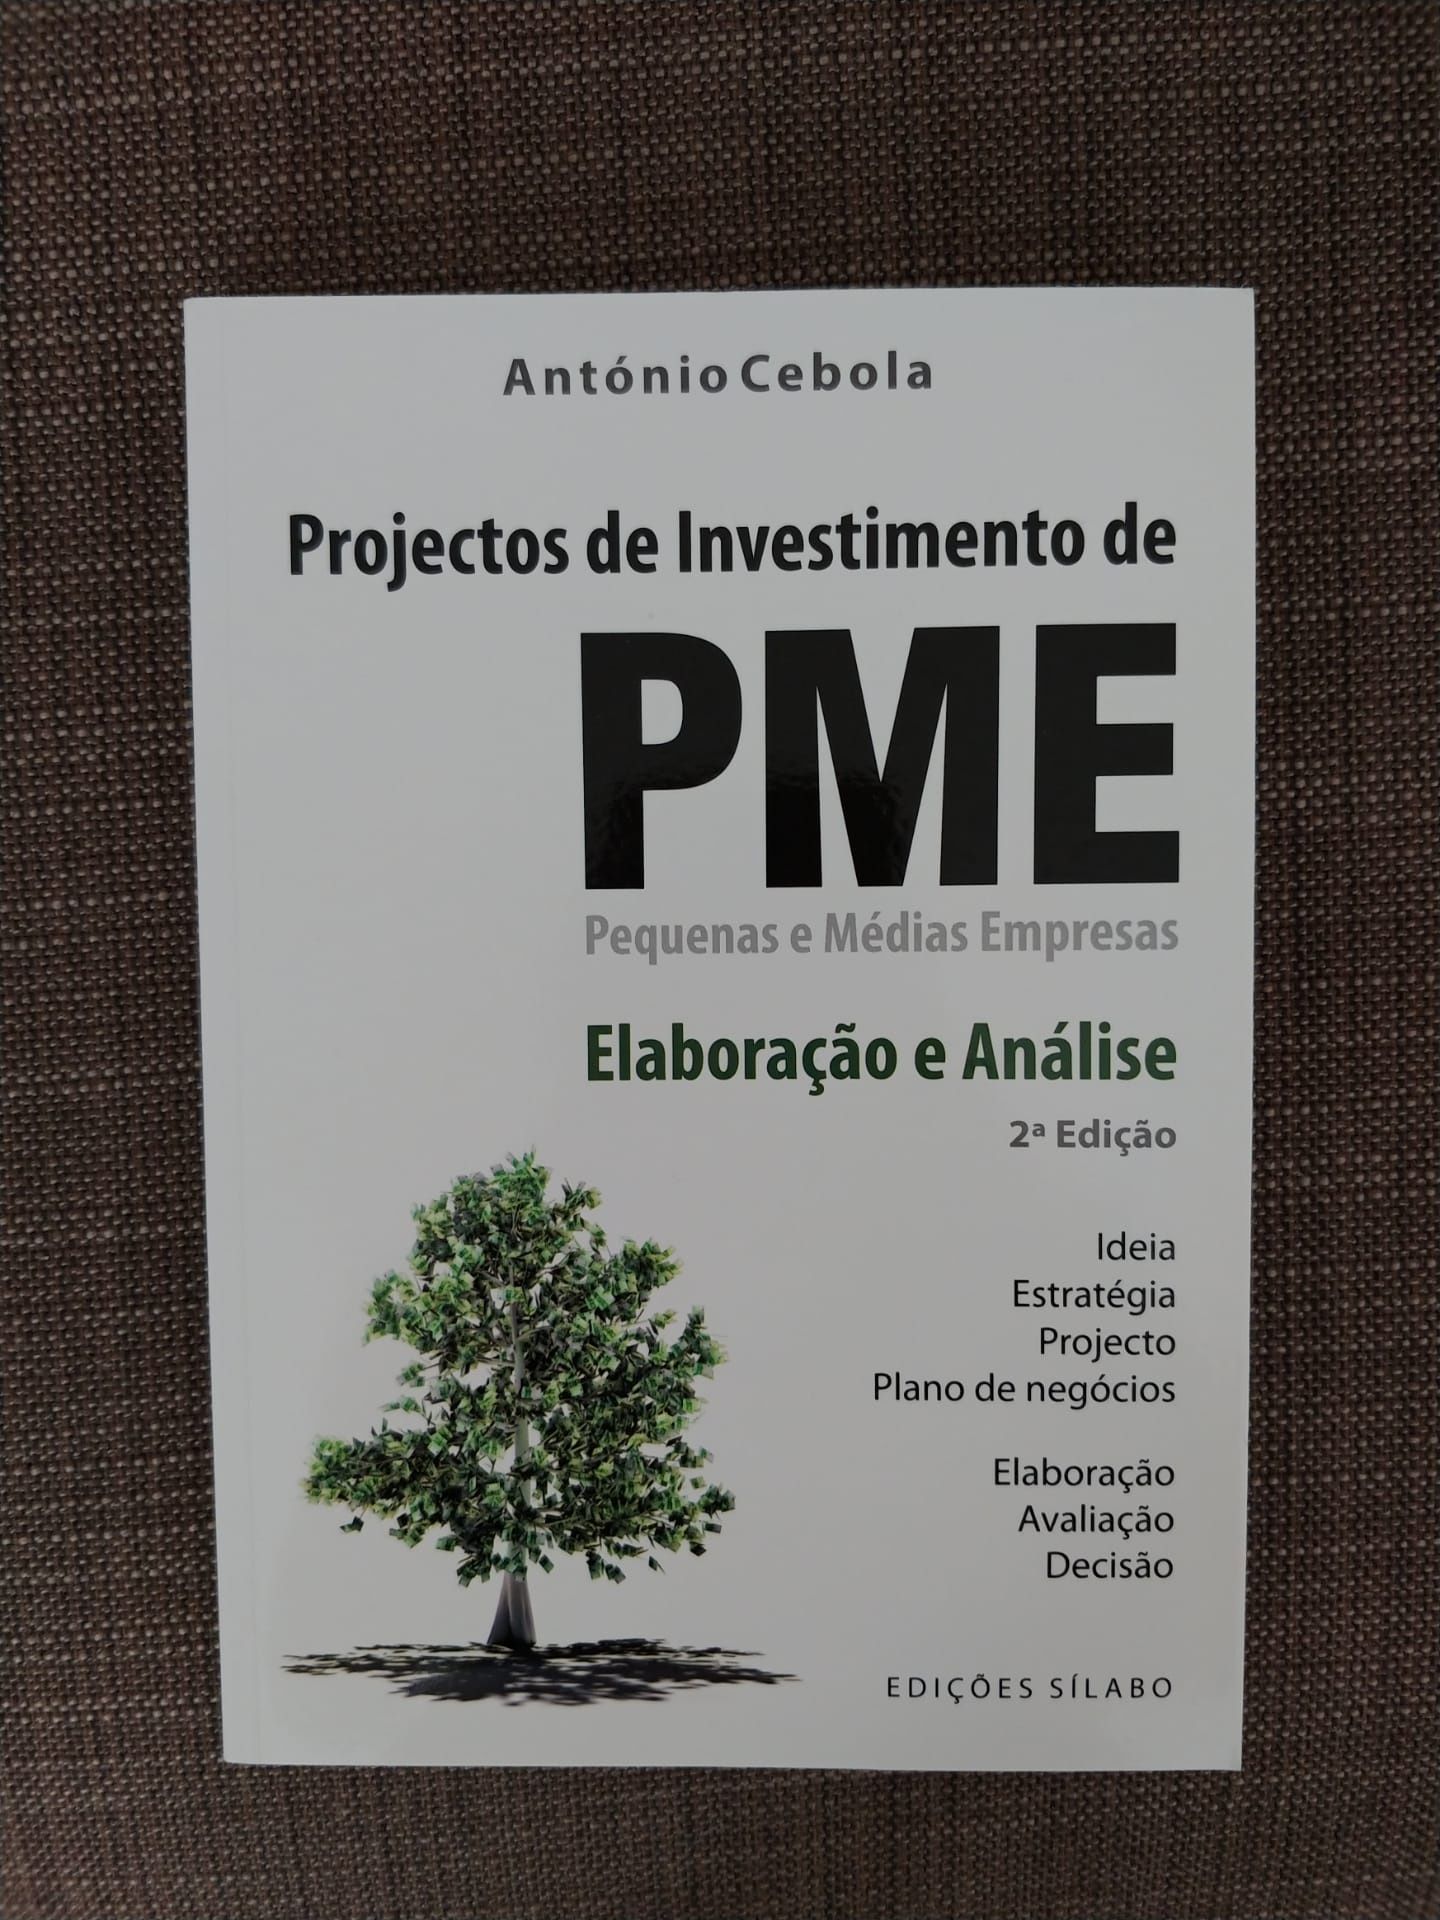 Projectos de Investimento de PME
de António Cebola